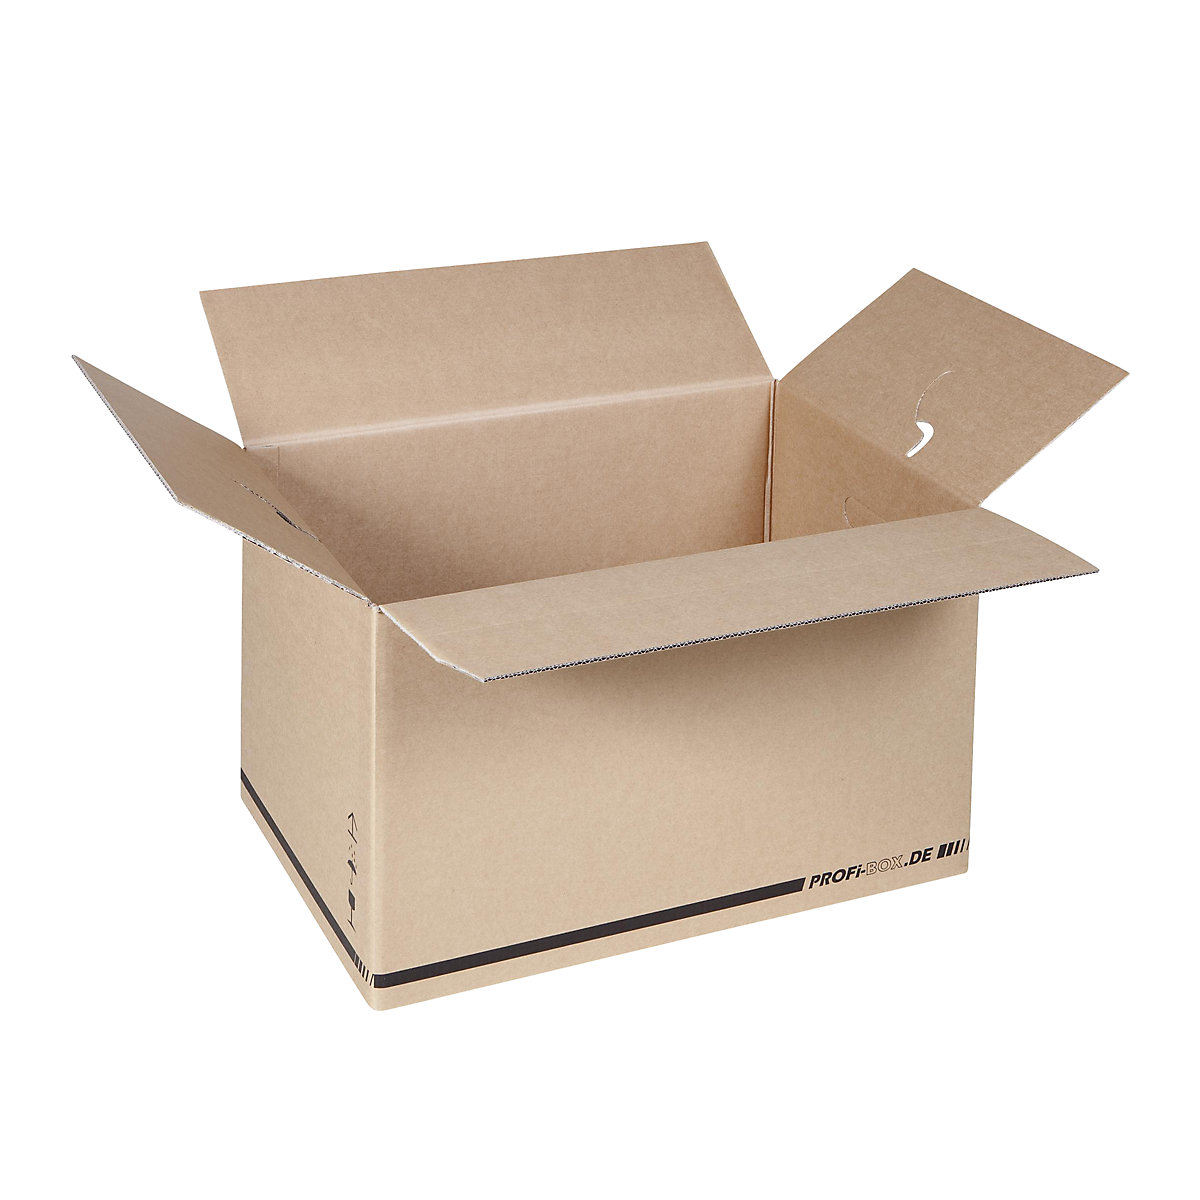 Profi box, z 2-vlnitej lepenky, vnútorné rozmery 574 x 376 x 340 mm, FEFCO 0216, OJ 50 ks-3